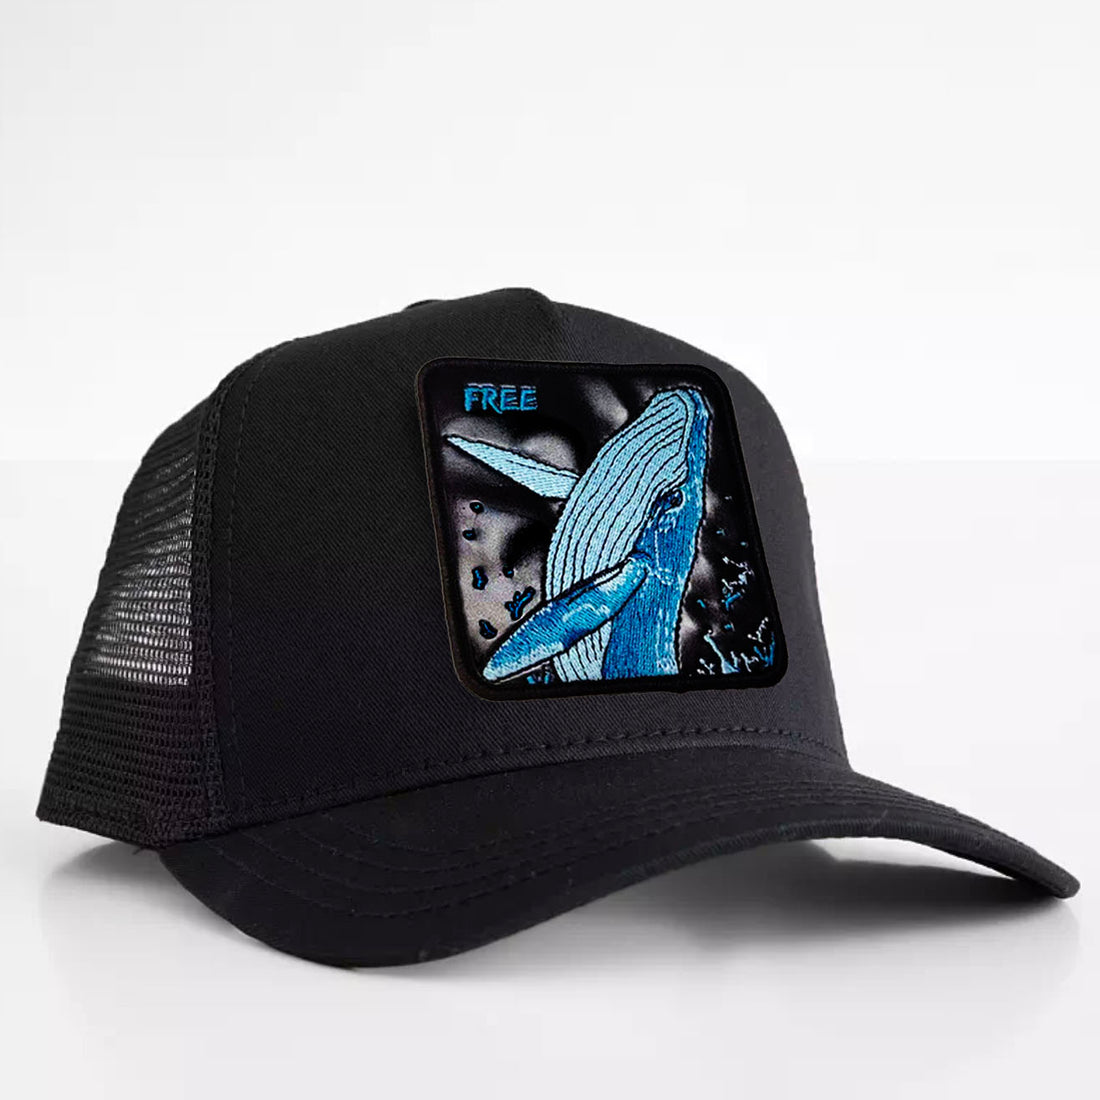 Whale "Free" Trucker Hat